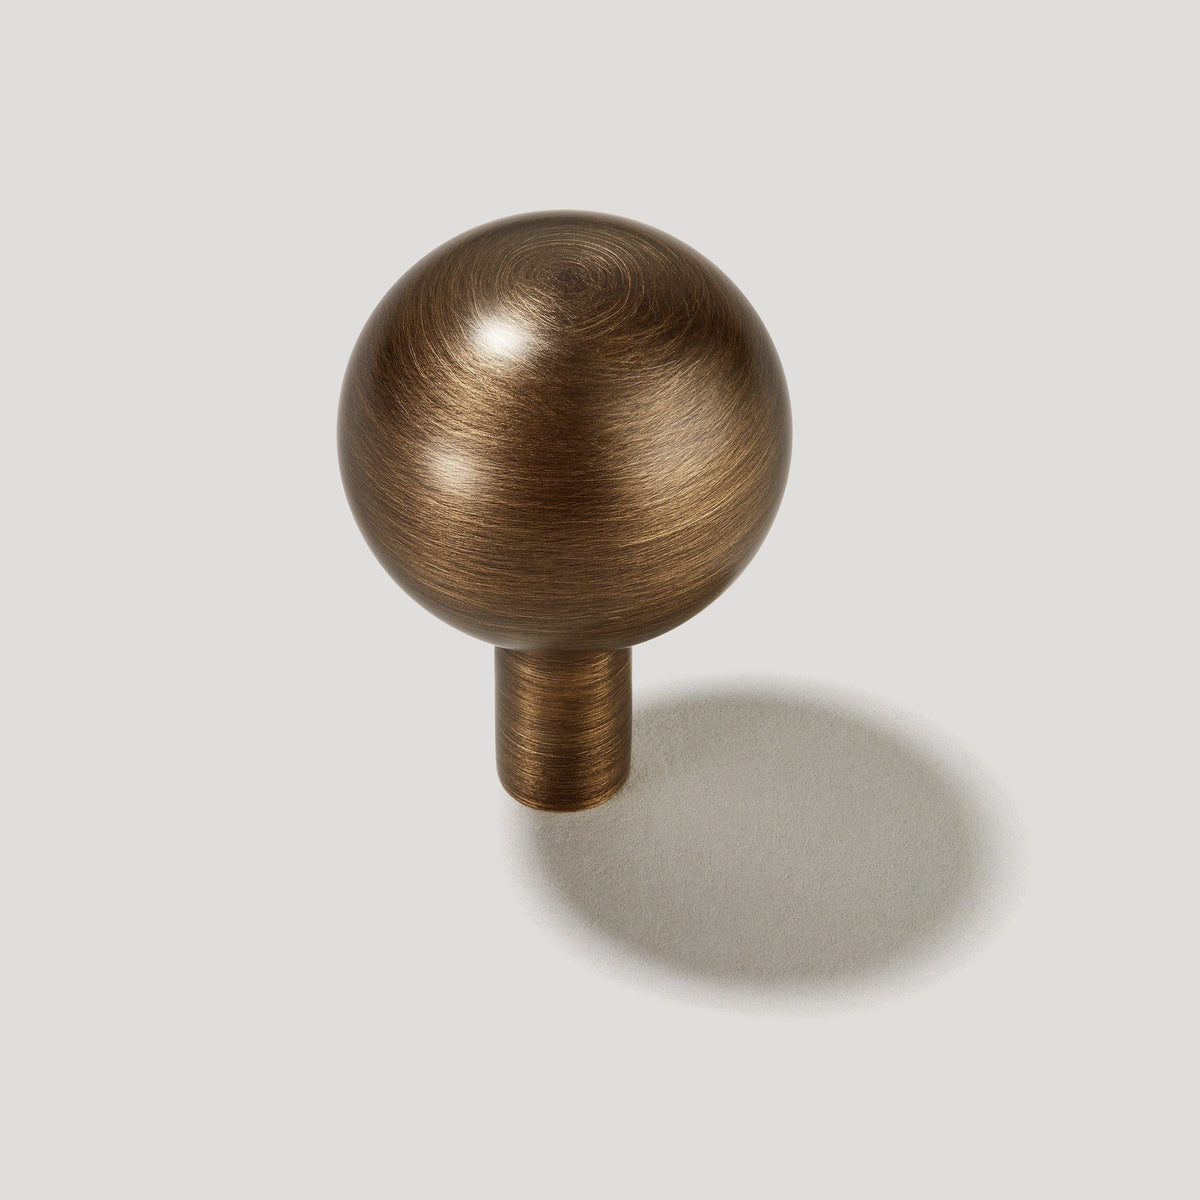 Heritage Brass Cabinet Knob Sphere Design 22mm Antique Brass